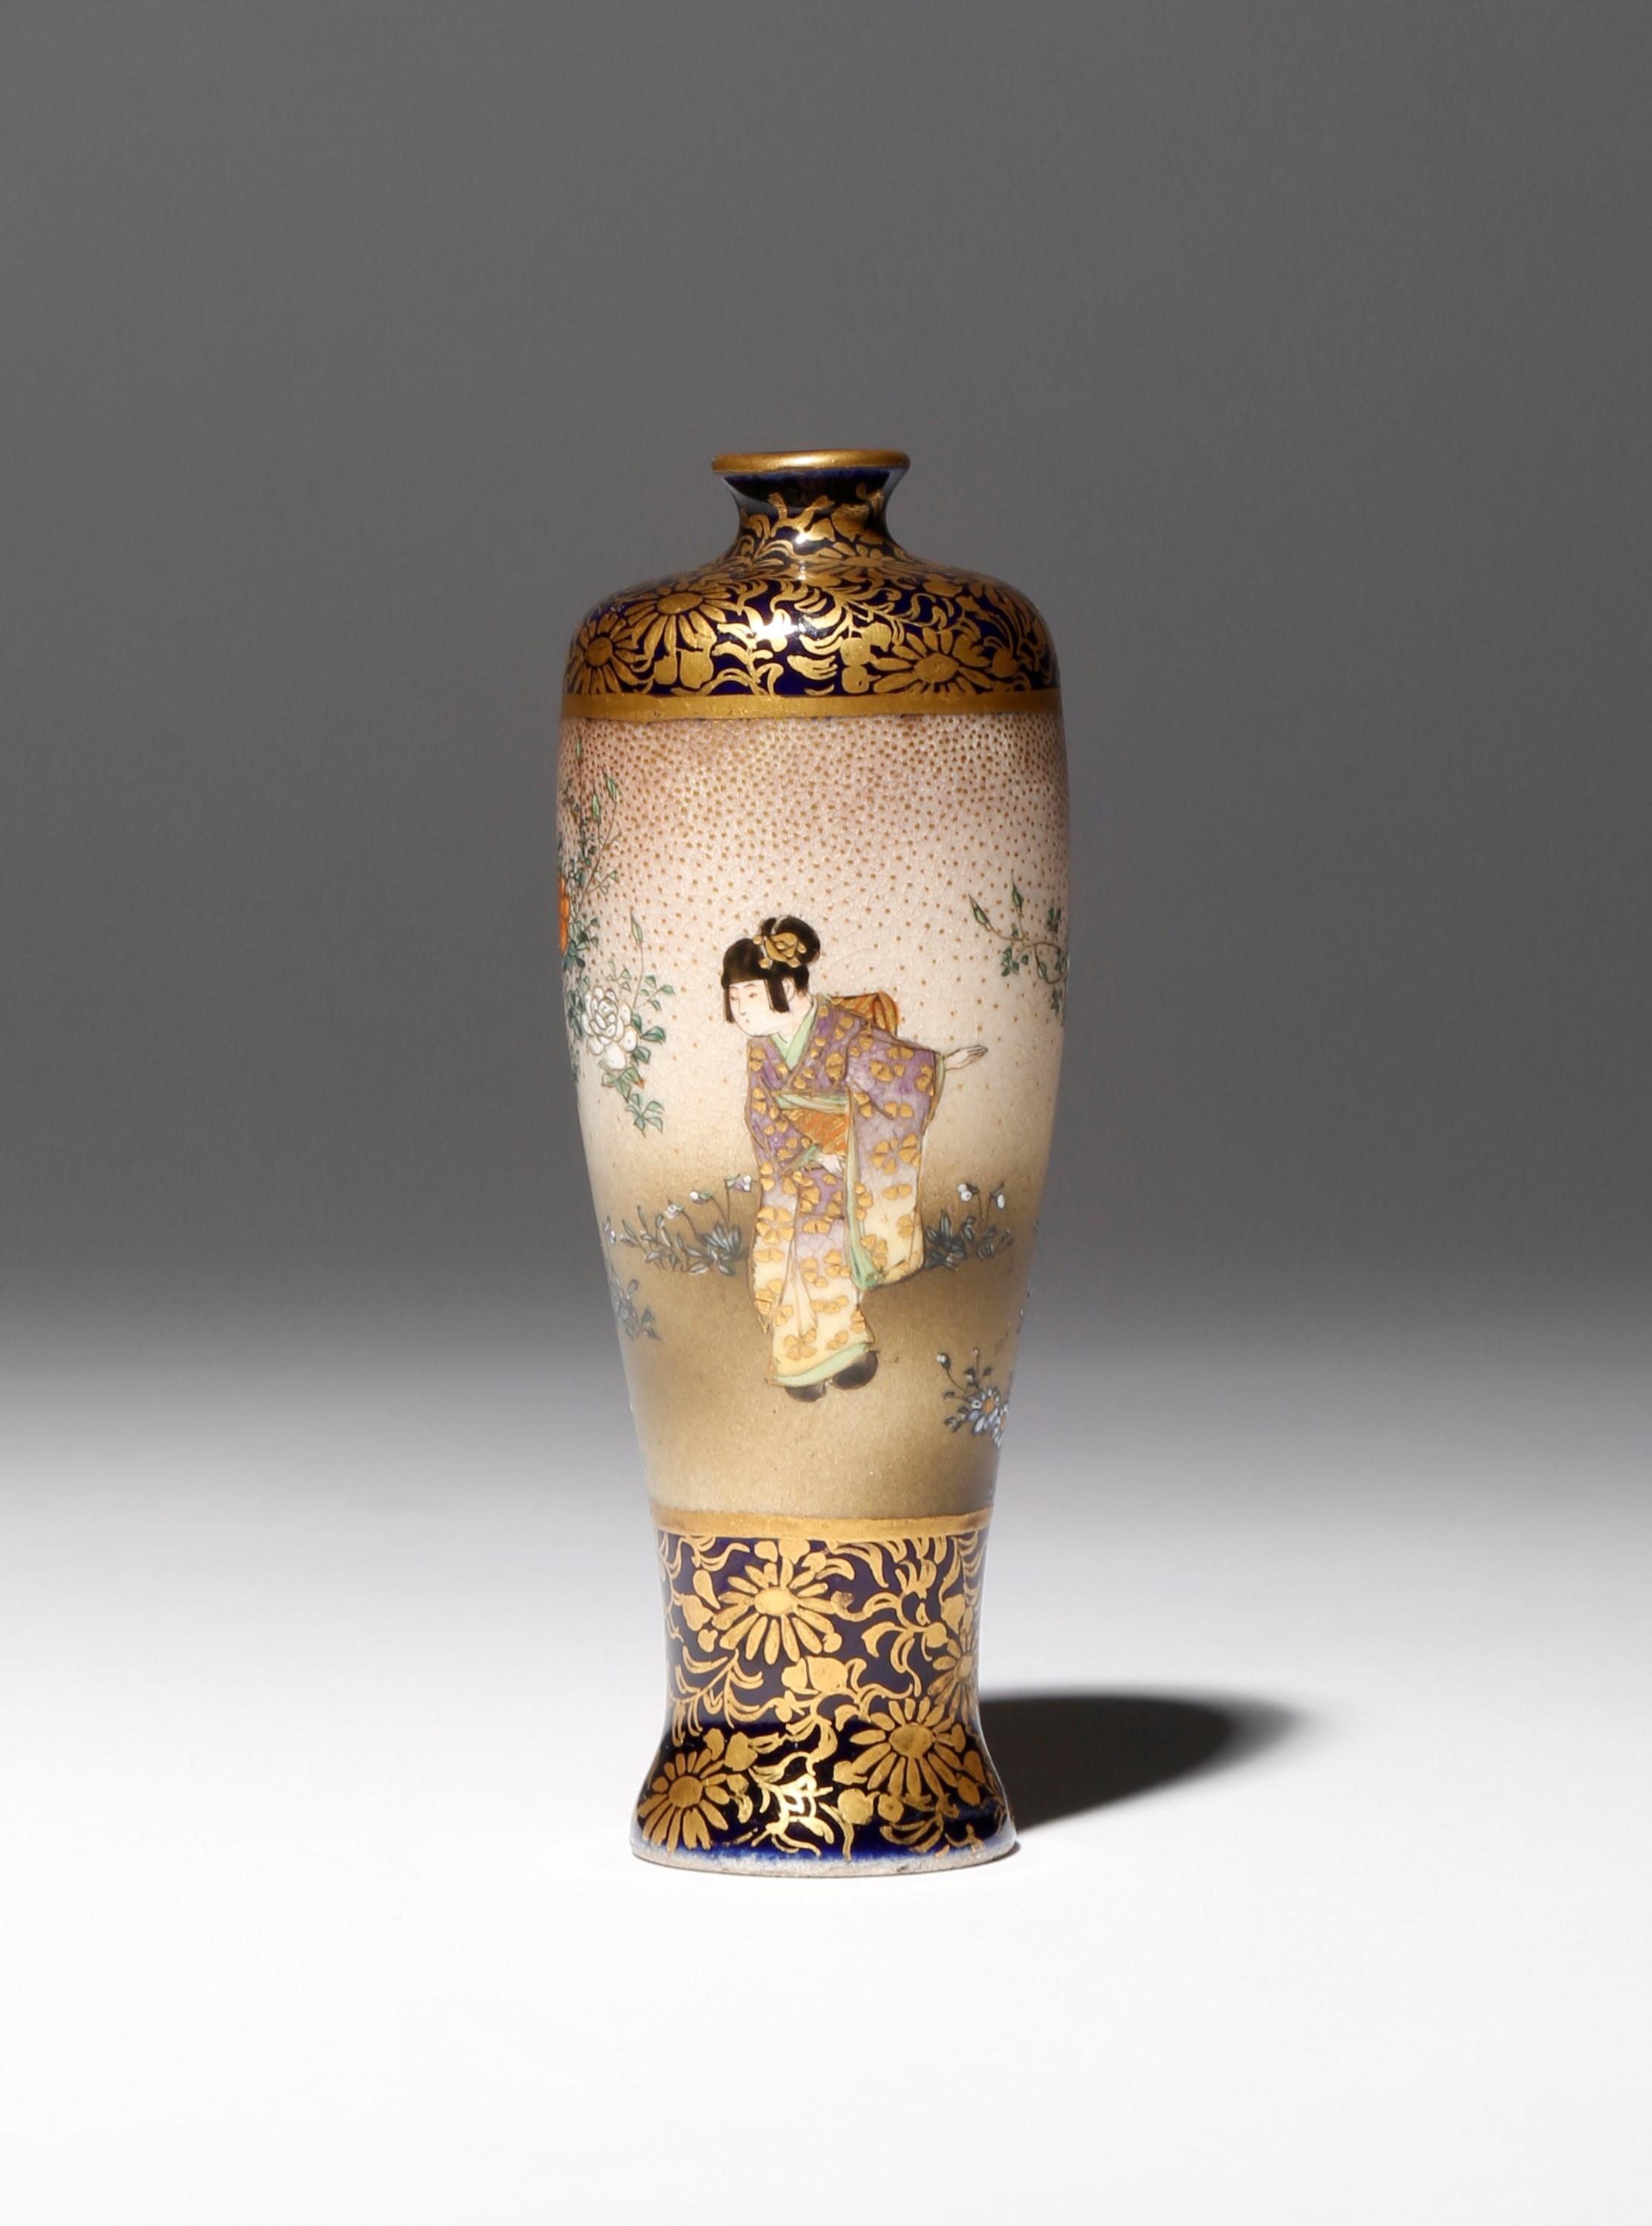 Japanese Satsuma Vase by Kinkozan